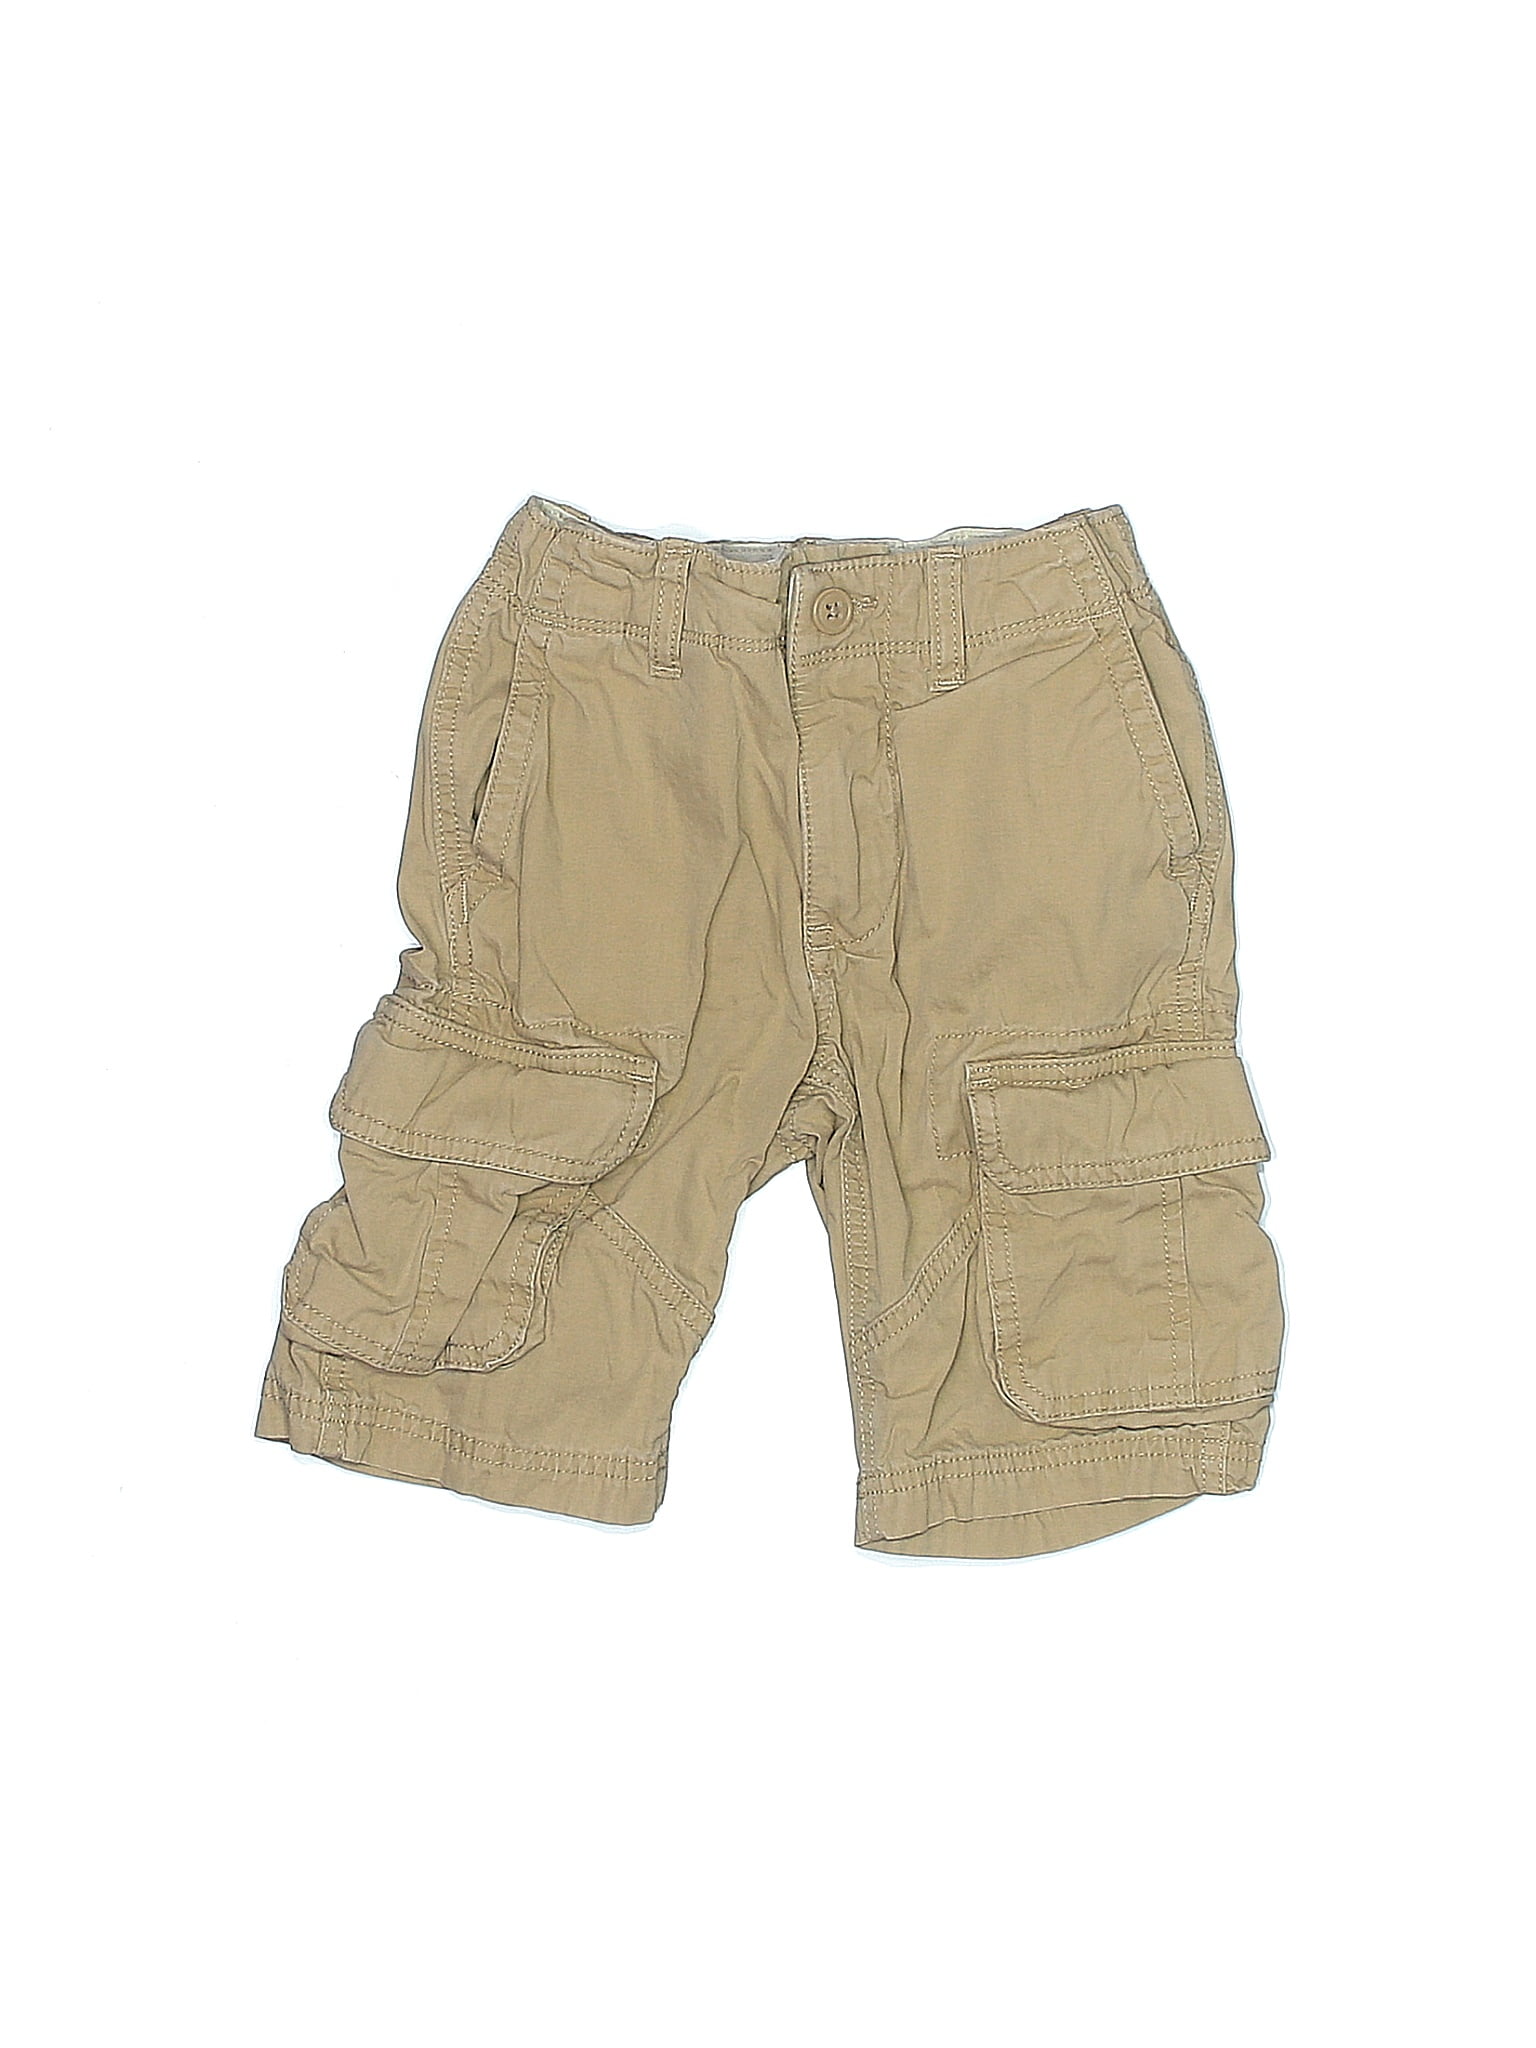 Cargo Shorts - Beige - Kids